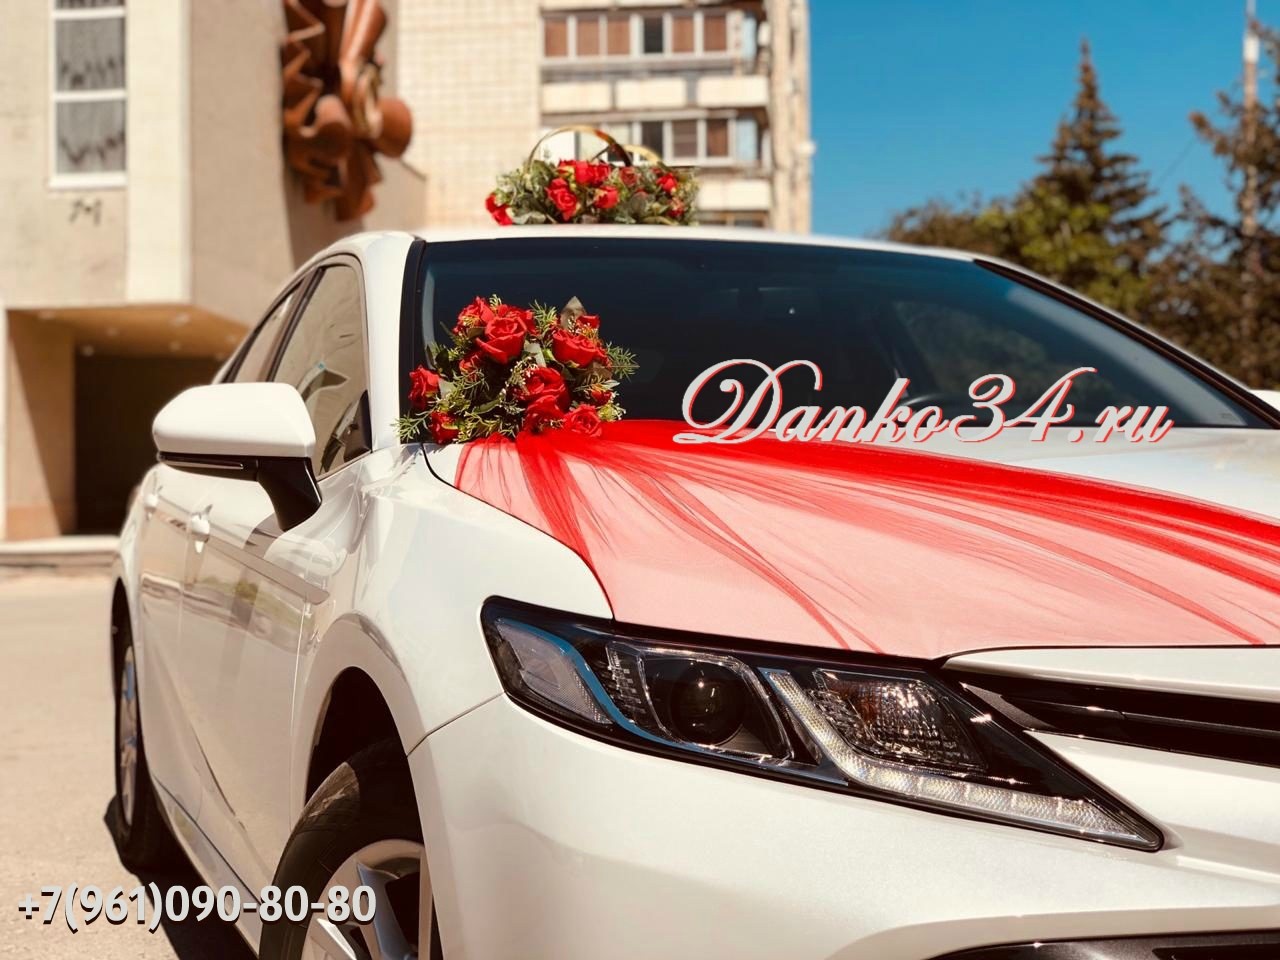 Изображение Свадебный кортеж в Волгограде - аренда машин на свадьбу, прокат свадебных украшений на авто, заказ по приемлемой цене.